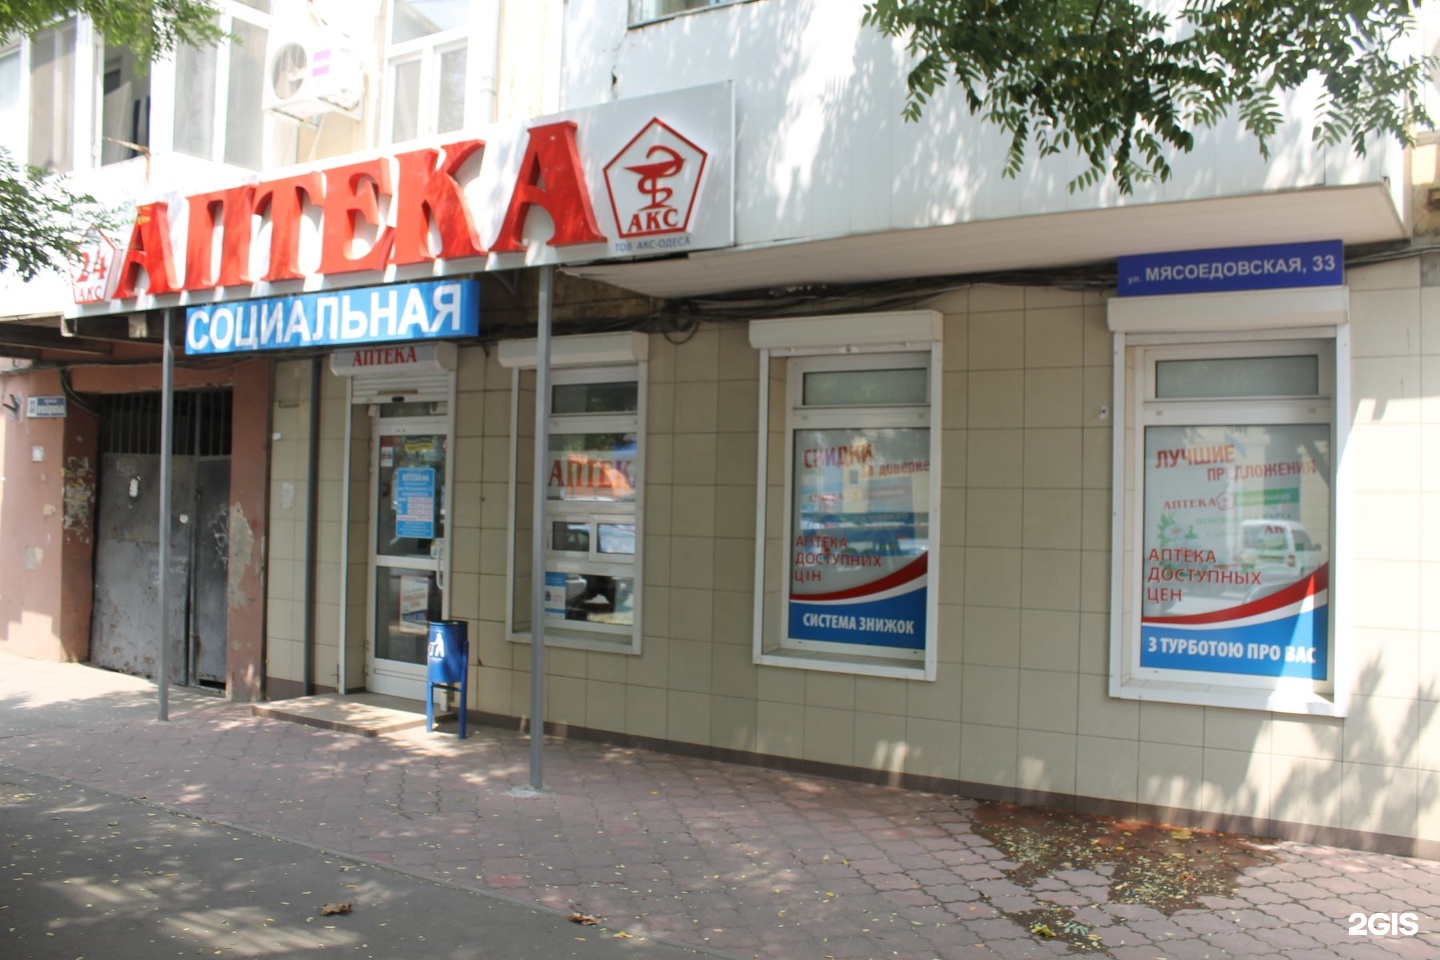 Аптека на одесской. Магазин на Мясоедовской в Одессе фото.